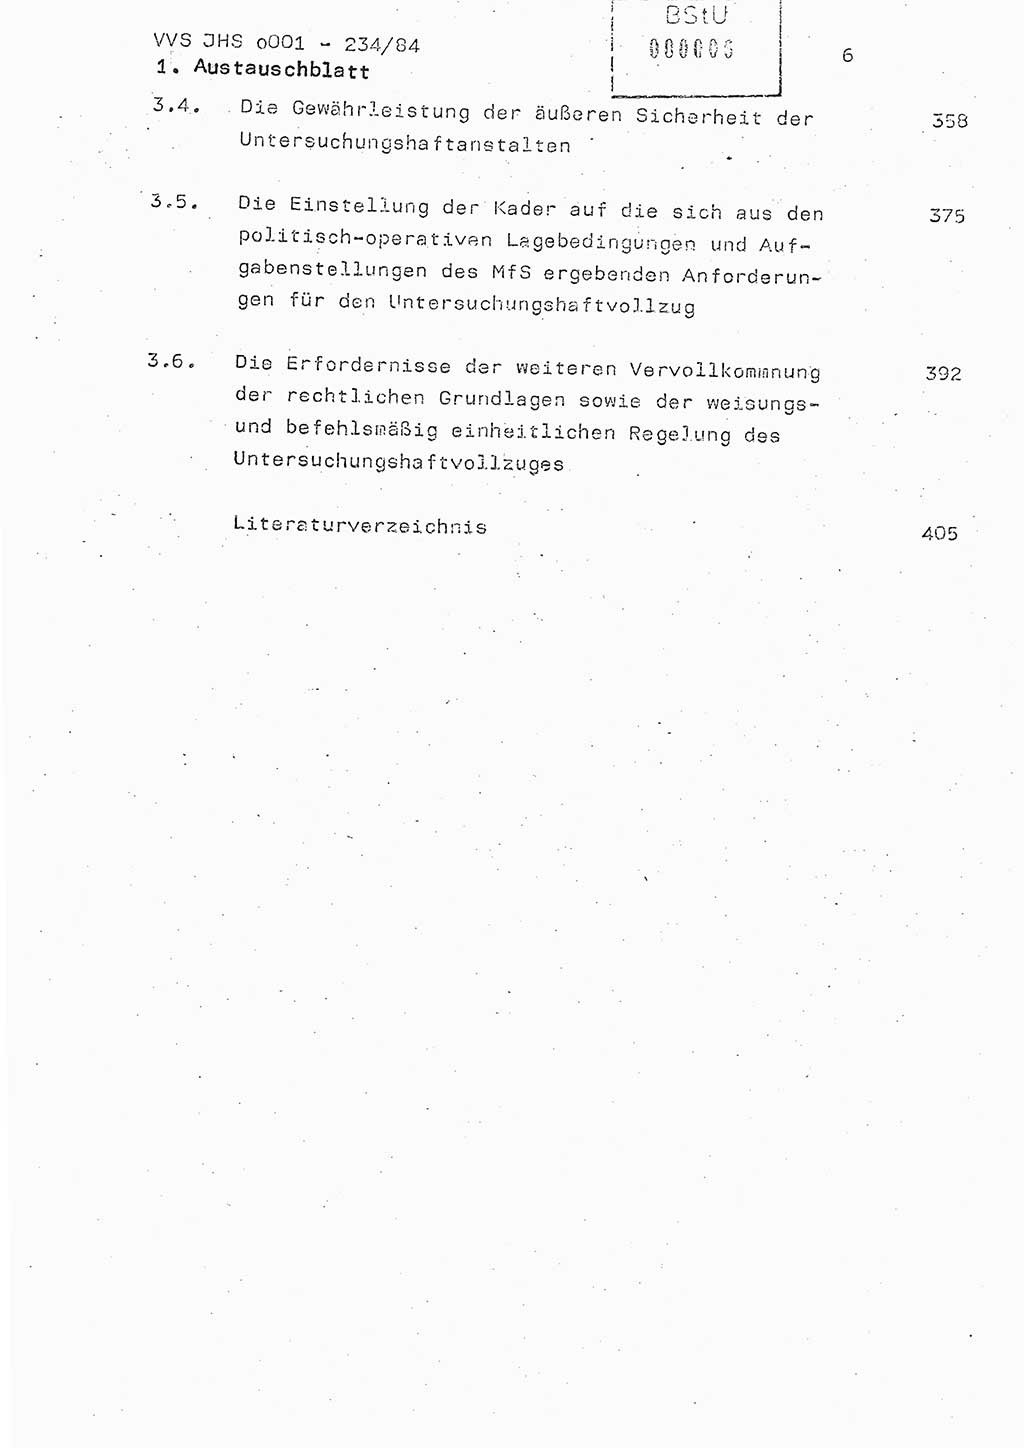 Dissertation Oberst Siegfried Rataizick (Abt. ⅩⅣ), Oberstleutnant Volkmar Heinz (Abt. ⅩⅣ), Oberstleutnant Werner Stein (HA Ⅸ), Hauptmann Heinz Conrad (JHS), Ministerium für Staatssicherheit (MfS) [Deutsche Demokratische Republik (DDR)], Juristische Hochschule (JHS), Vertrauliche Verschlußsache (VVS) o001-234/84, Potsdam 1984, Seite 6 (Diss. MfS DDR JHS VVS o001-234/84 1984, S. 6)